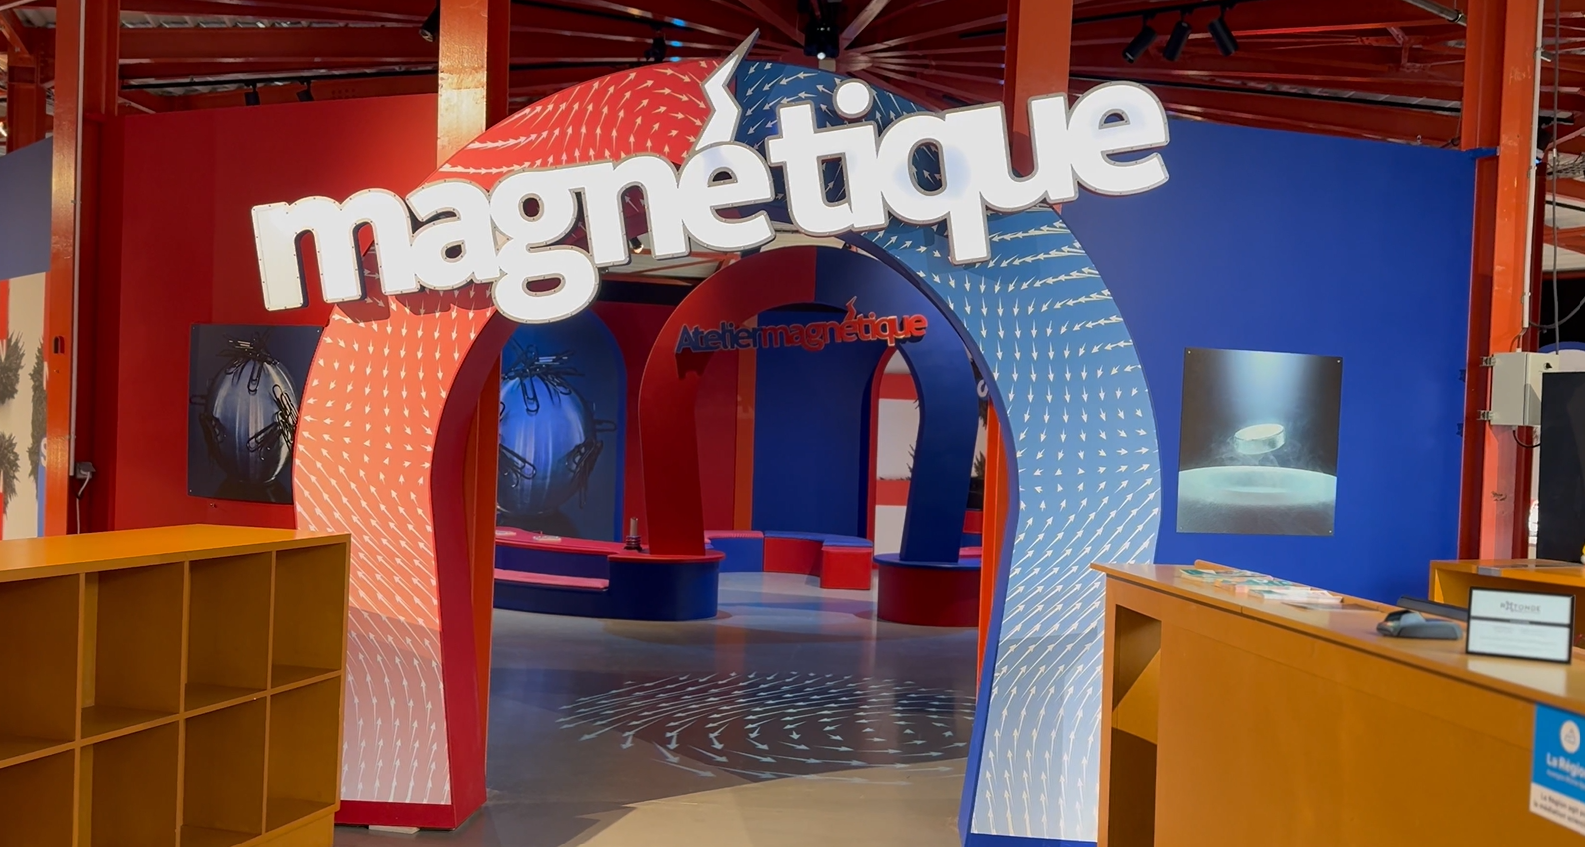  Découvrez en vidéo, l’exposition Magnétique d’Hélène Fischer à La Rotonde de Saint-Étienne 